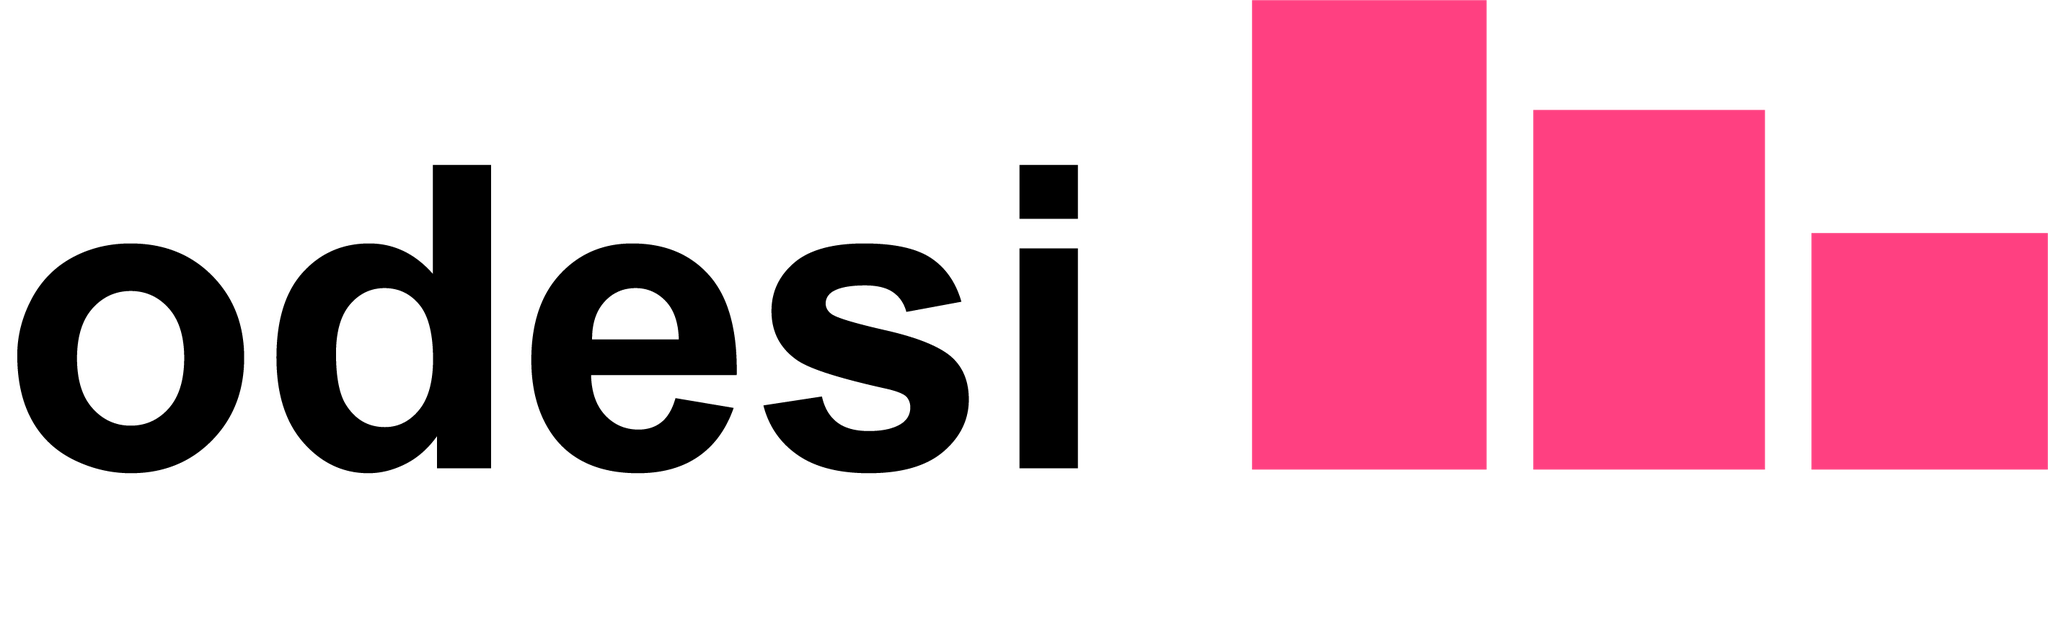 odesi logo - pink bar graph